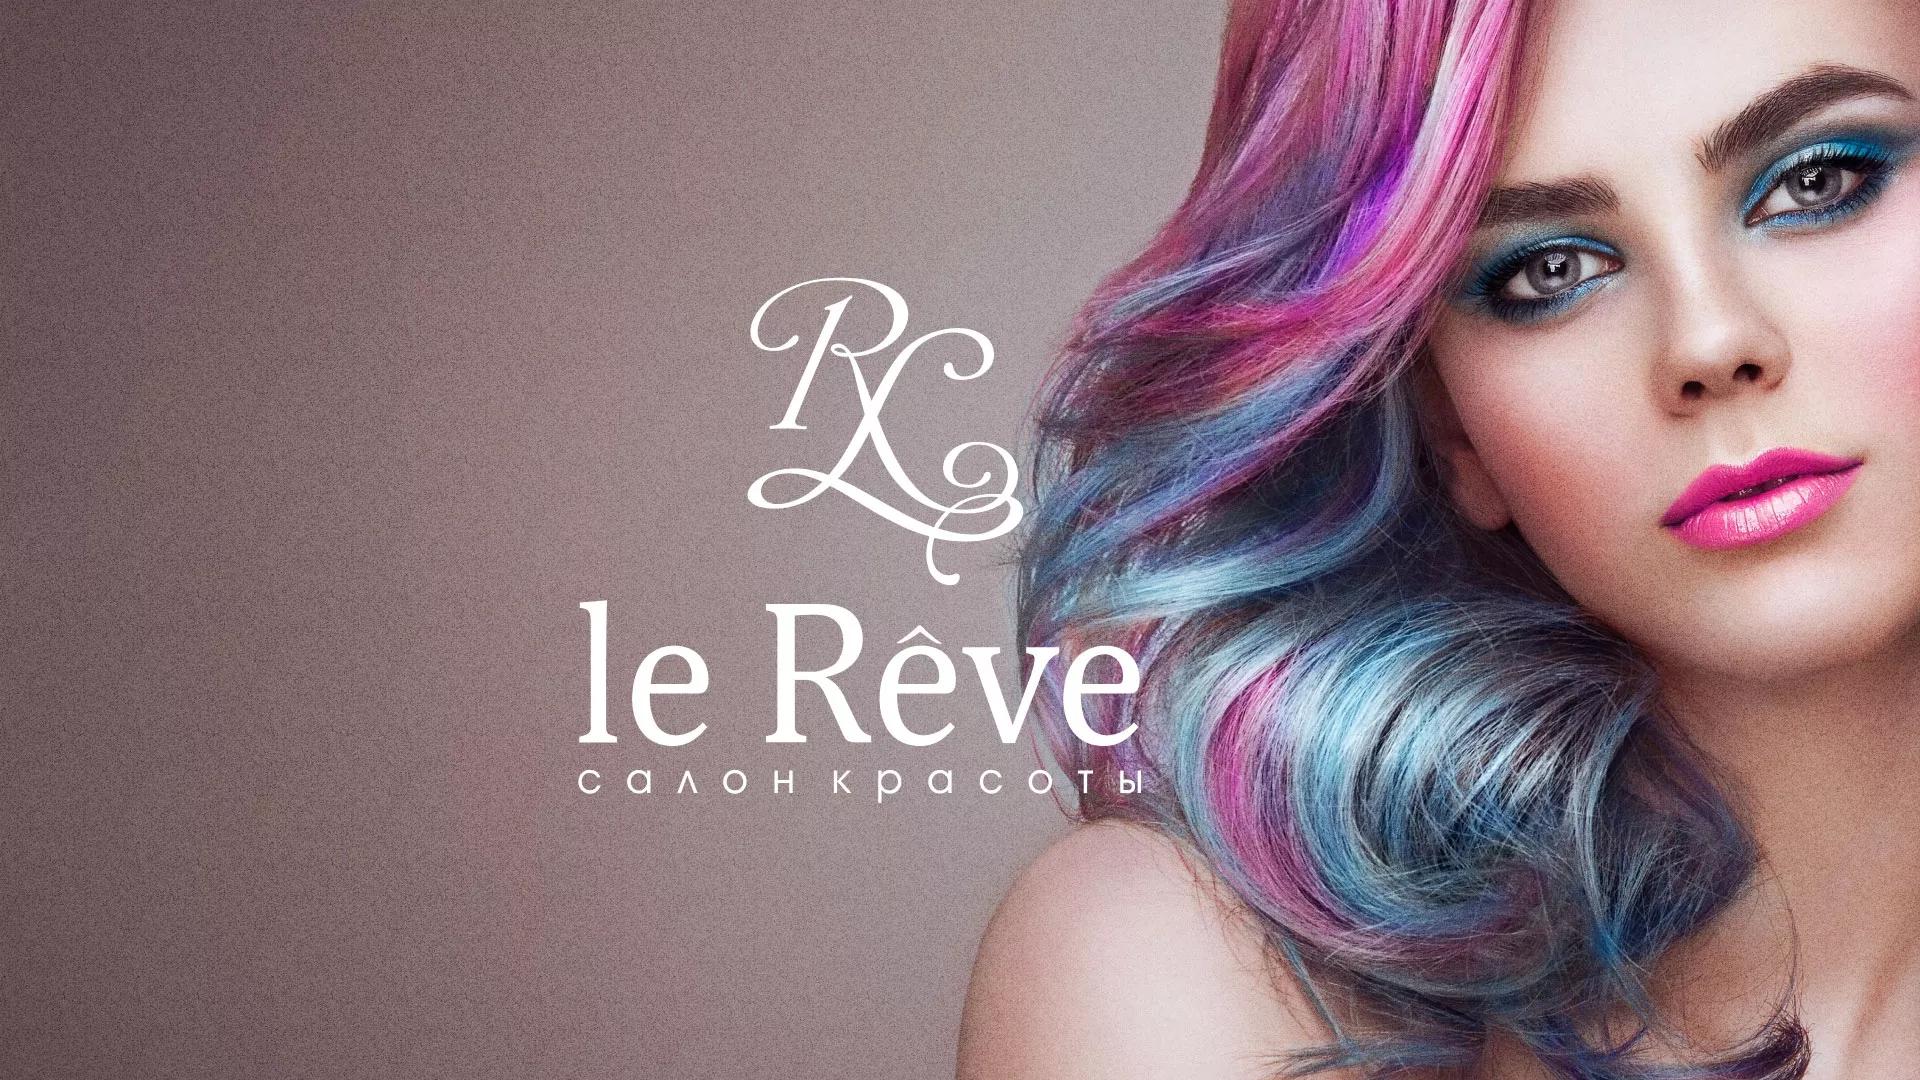 Создание сайта для салона красоты «Le Reve» в Алагире